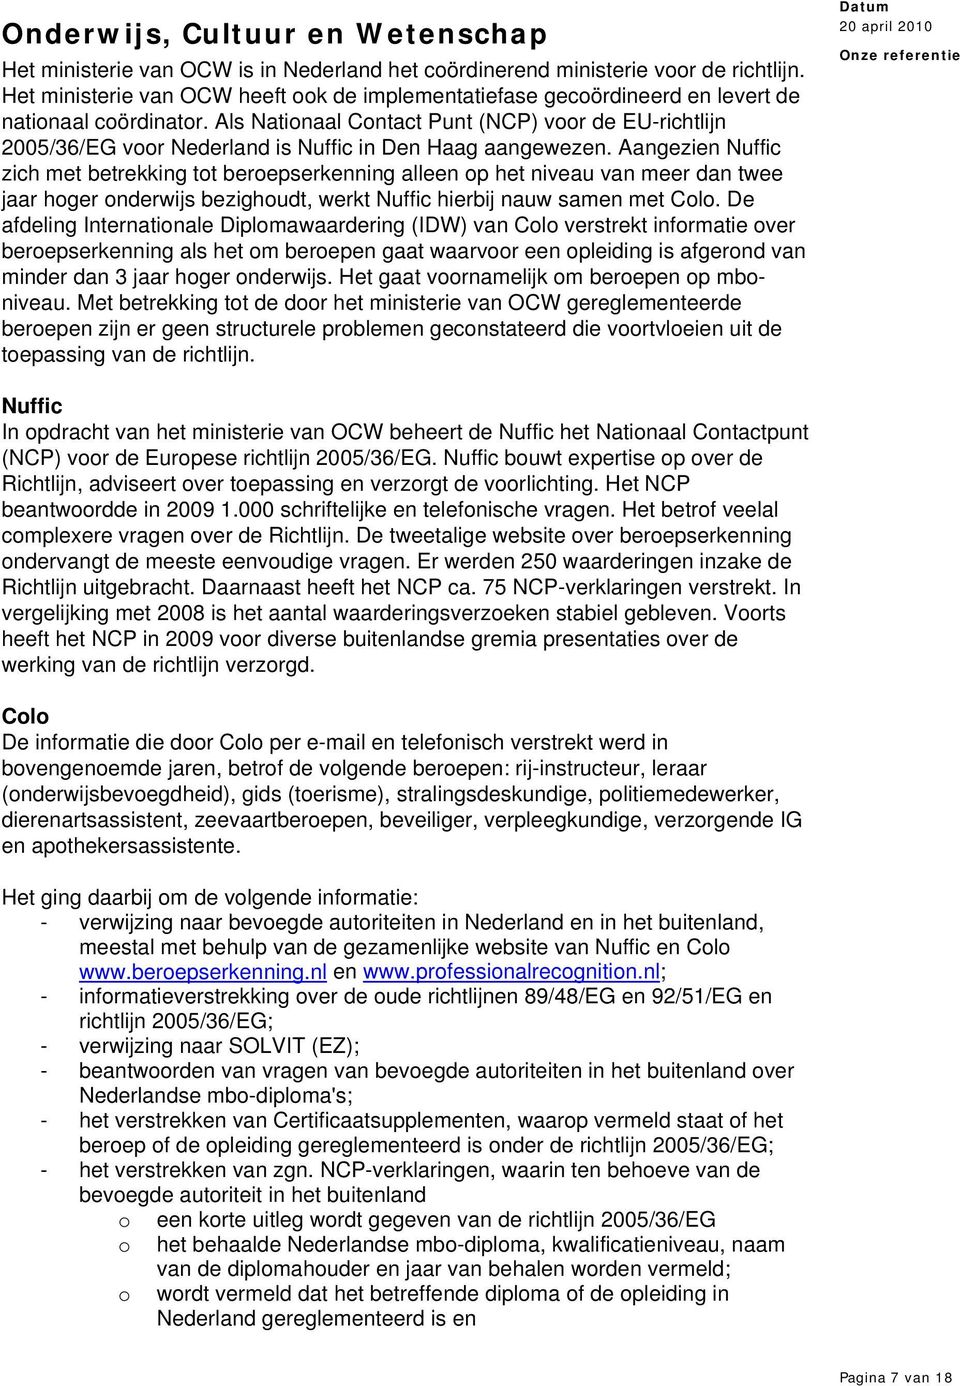 Als Nationaal Contact Punt (NCP) voor de EU-richtlijn 2005/36/EG voor Nederland is Nuffic in Den Haag aangewezen.